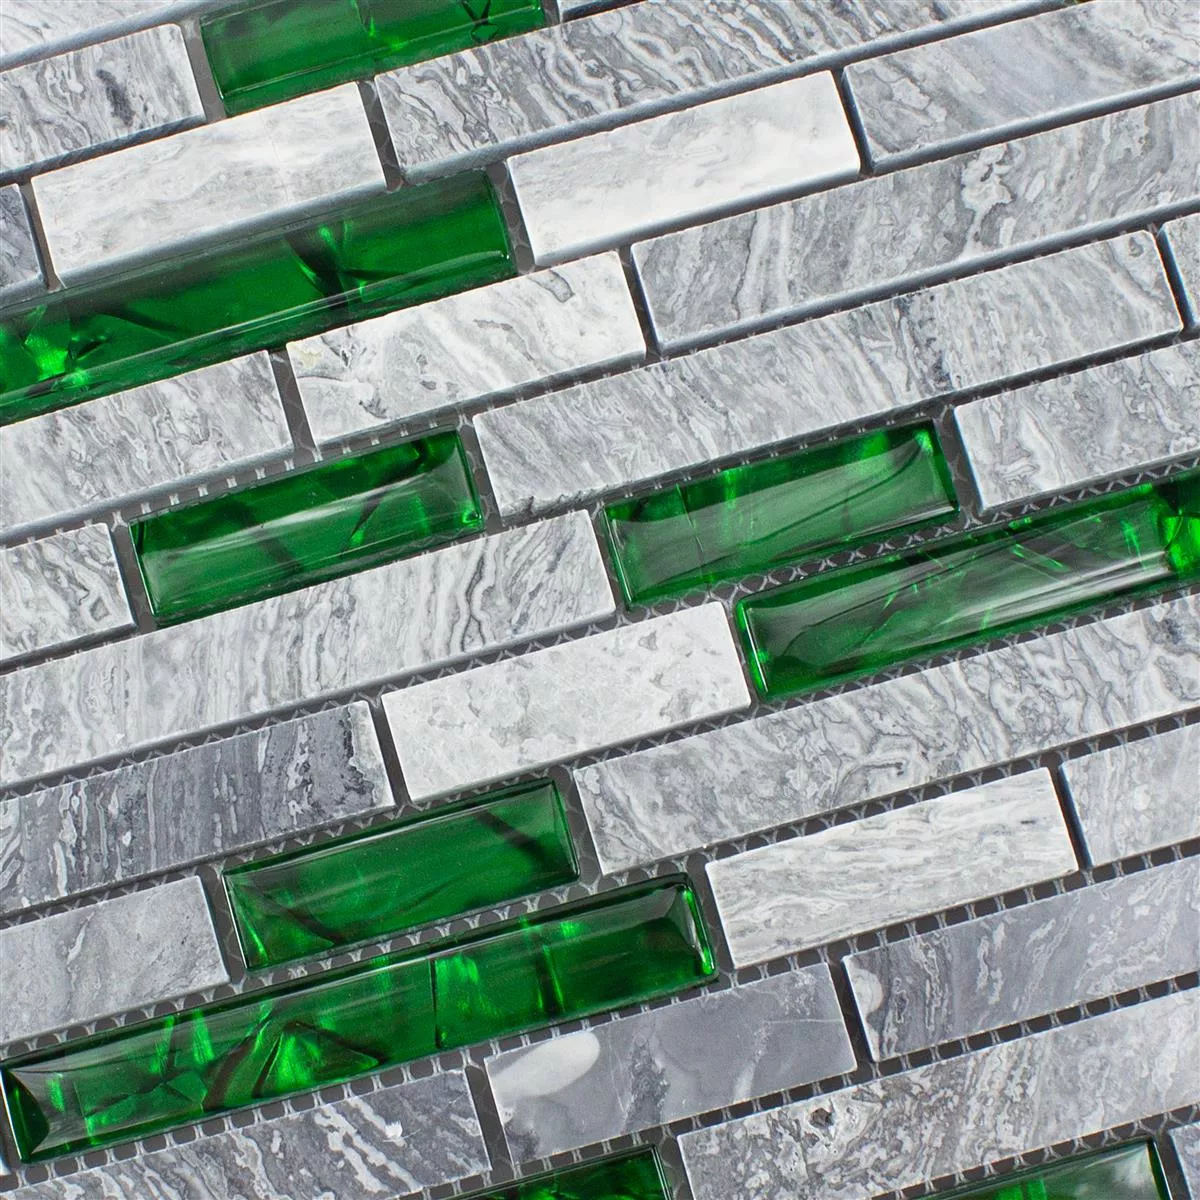 Mozaik Staklo Prirodni Kamen Pločice Sinop Siva Zelena Brick